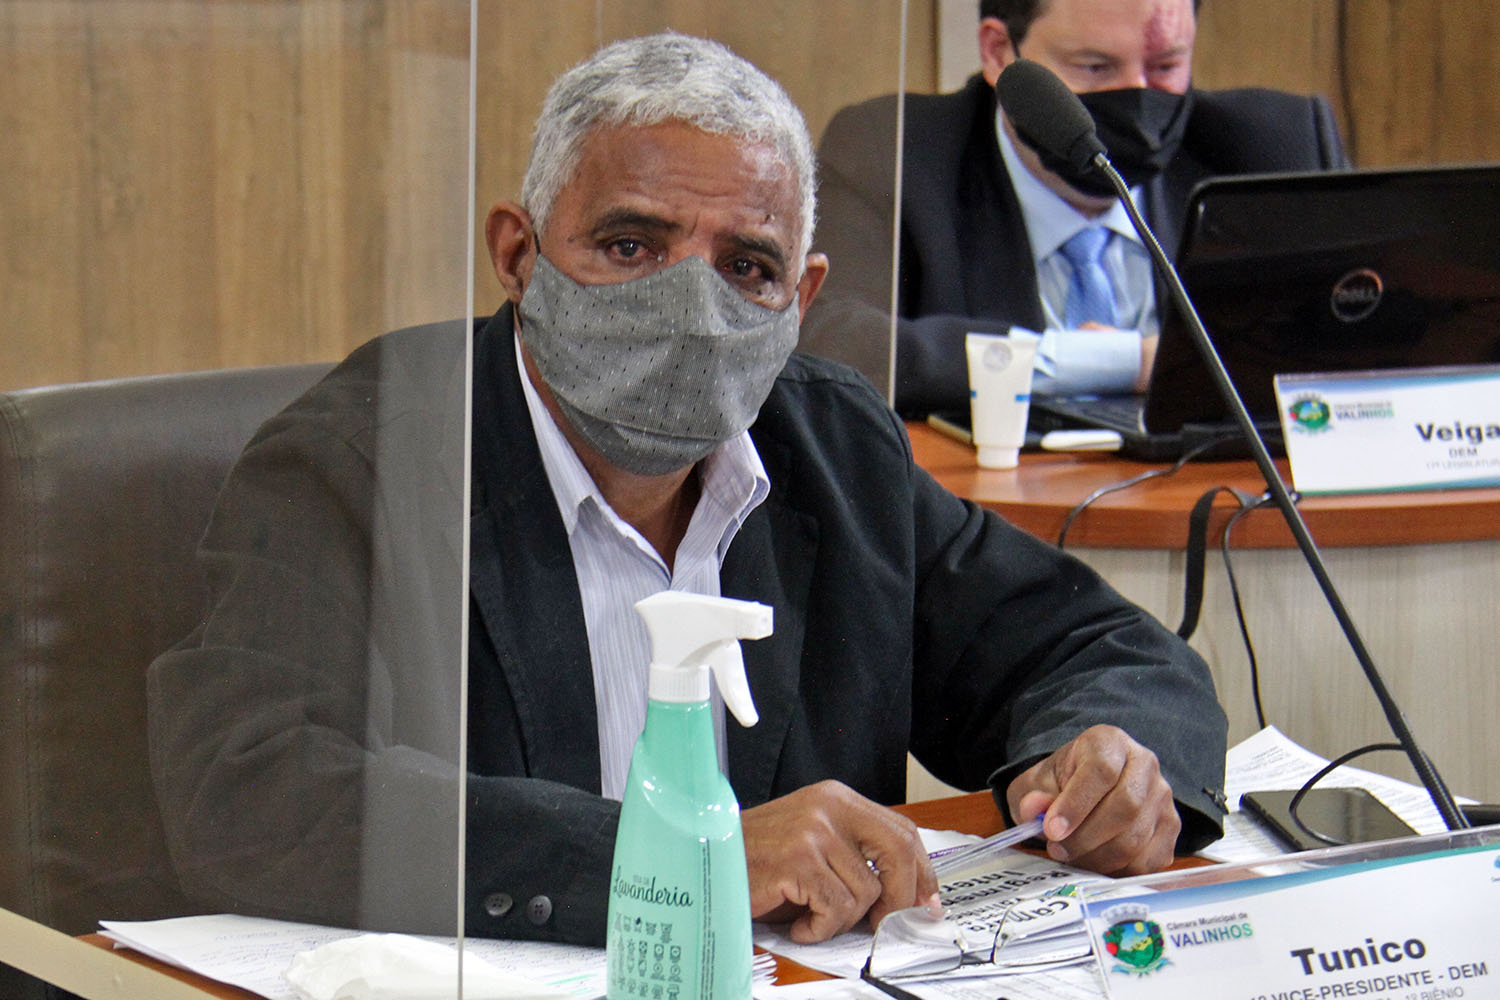 #PraCegoVer: Foto mostra o vereador Tunico acompanhando a sessão ordinária.